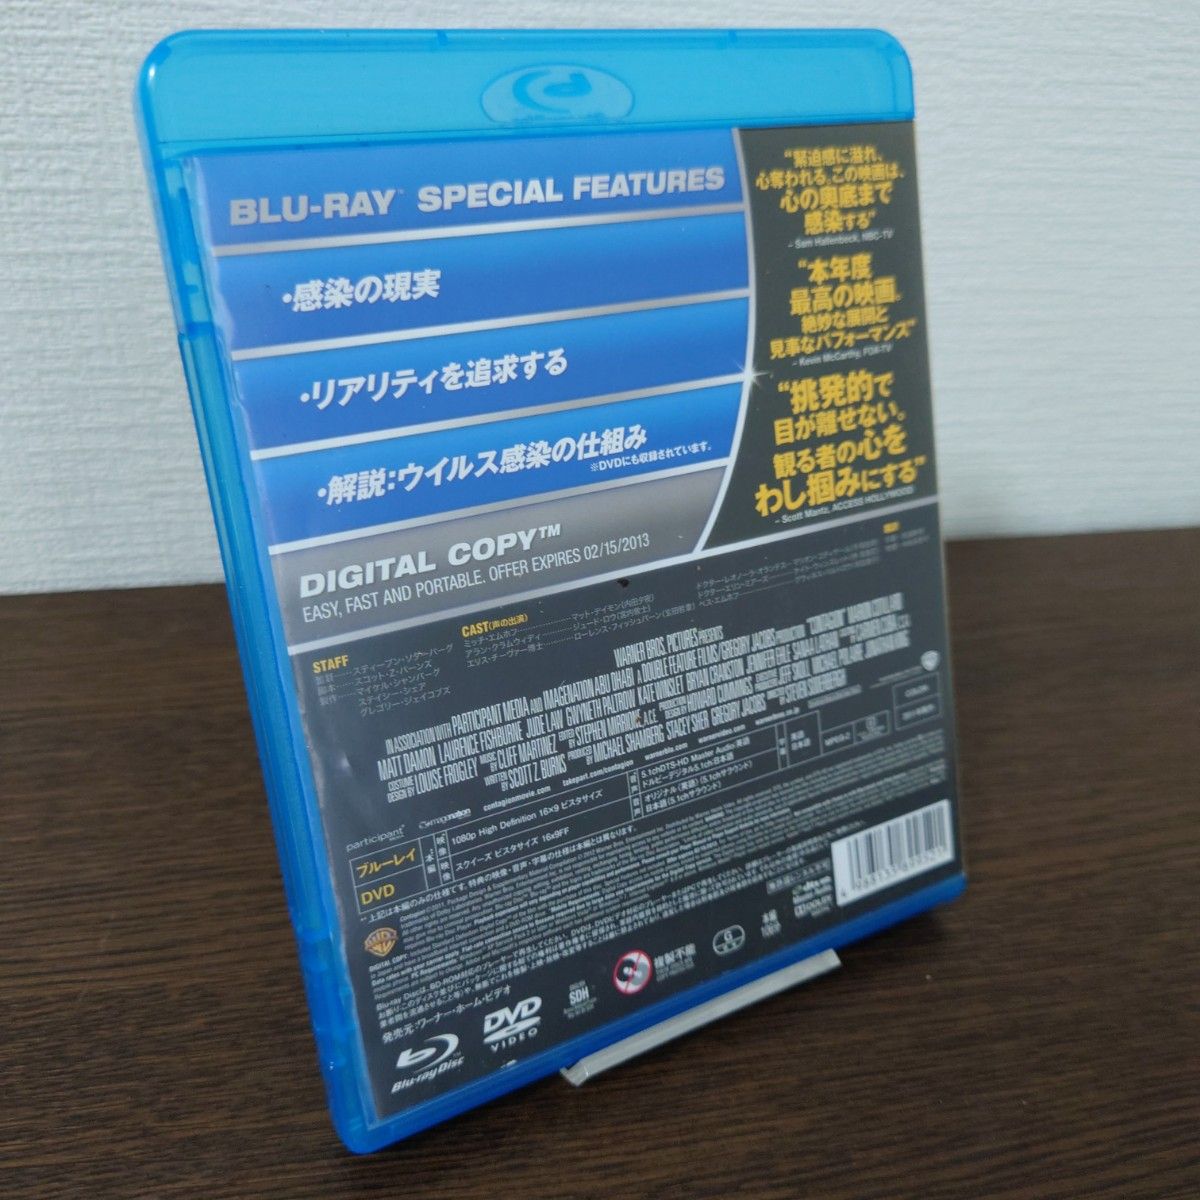 コンテイジョン ブルーレイ&DVDセット('11米)〈初回限定生産・2枚組〉 Blu-ray セル版